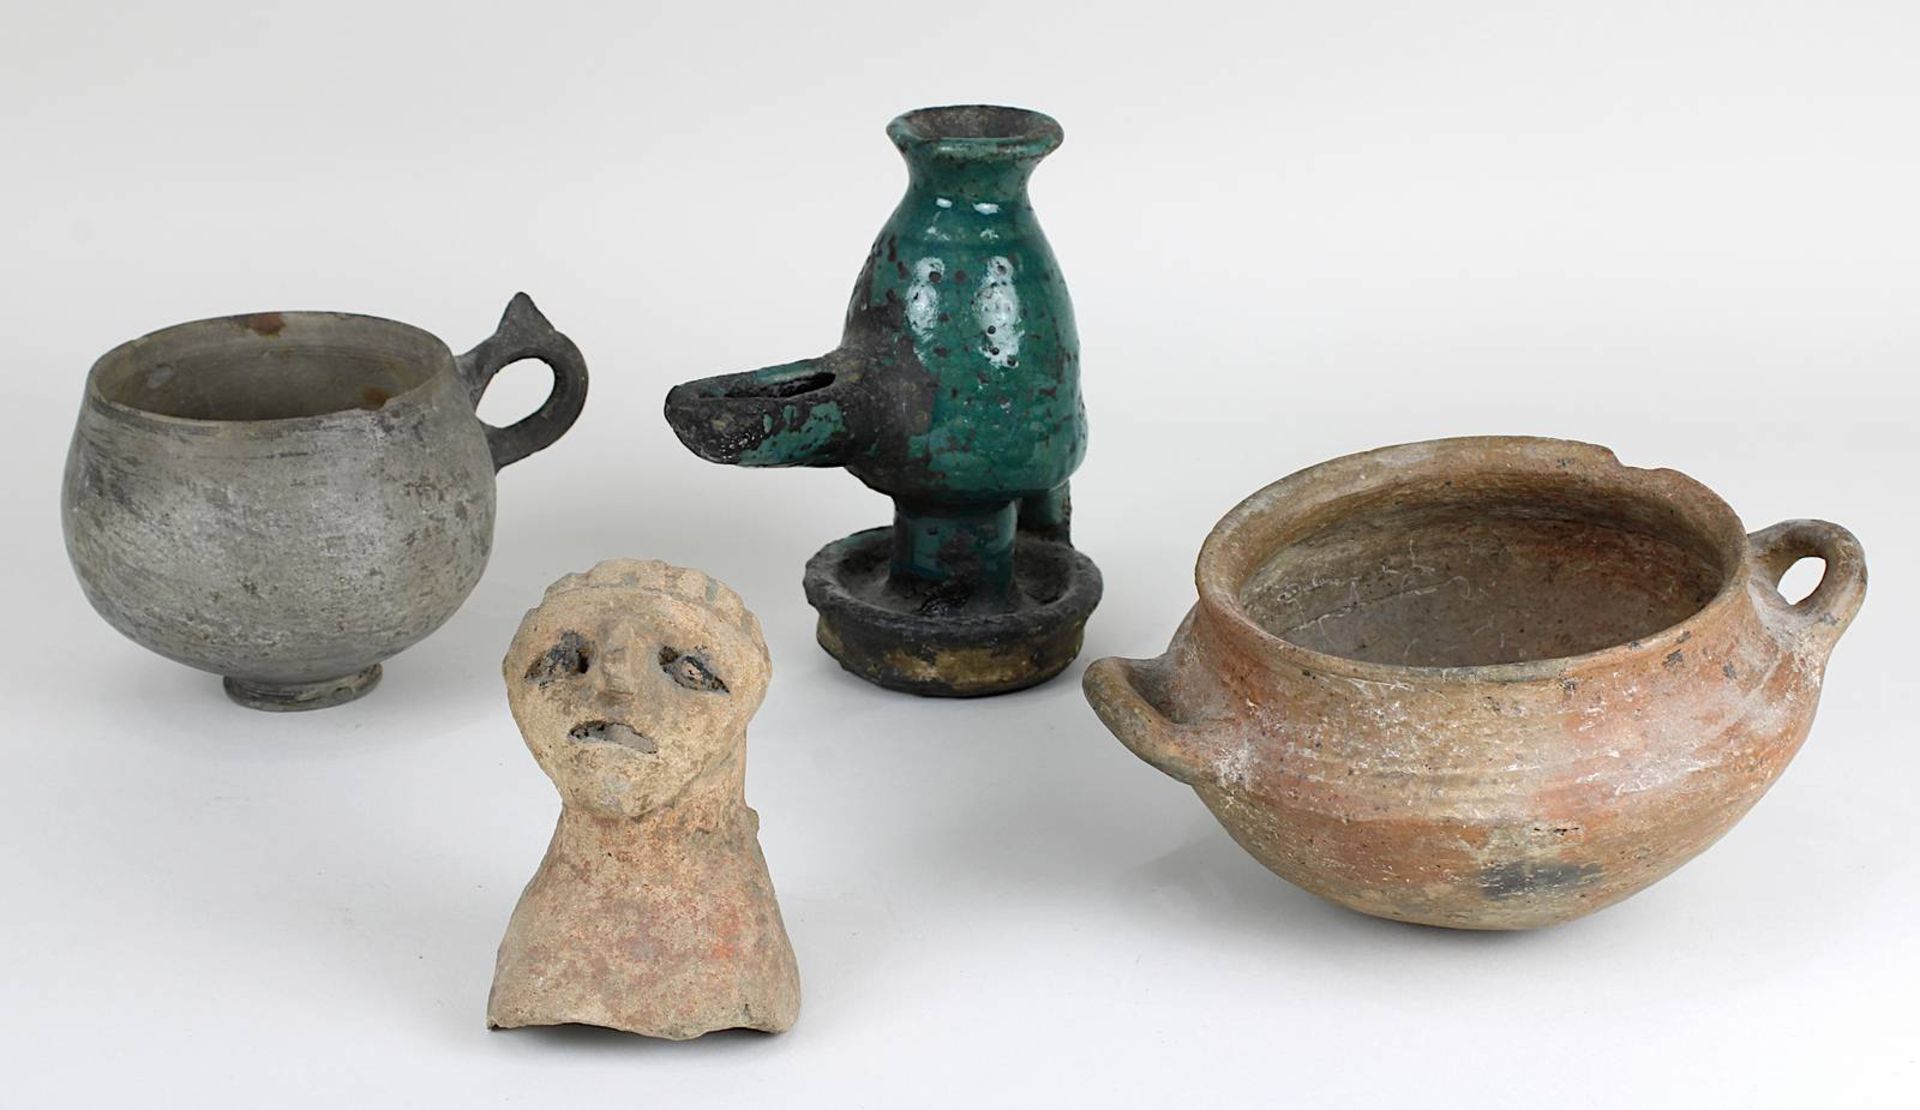 Konvolut antike Keramik: Töpfchen mit rundem Boden und 2 Henkeln, wohl römisch, roter Scherben, H